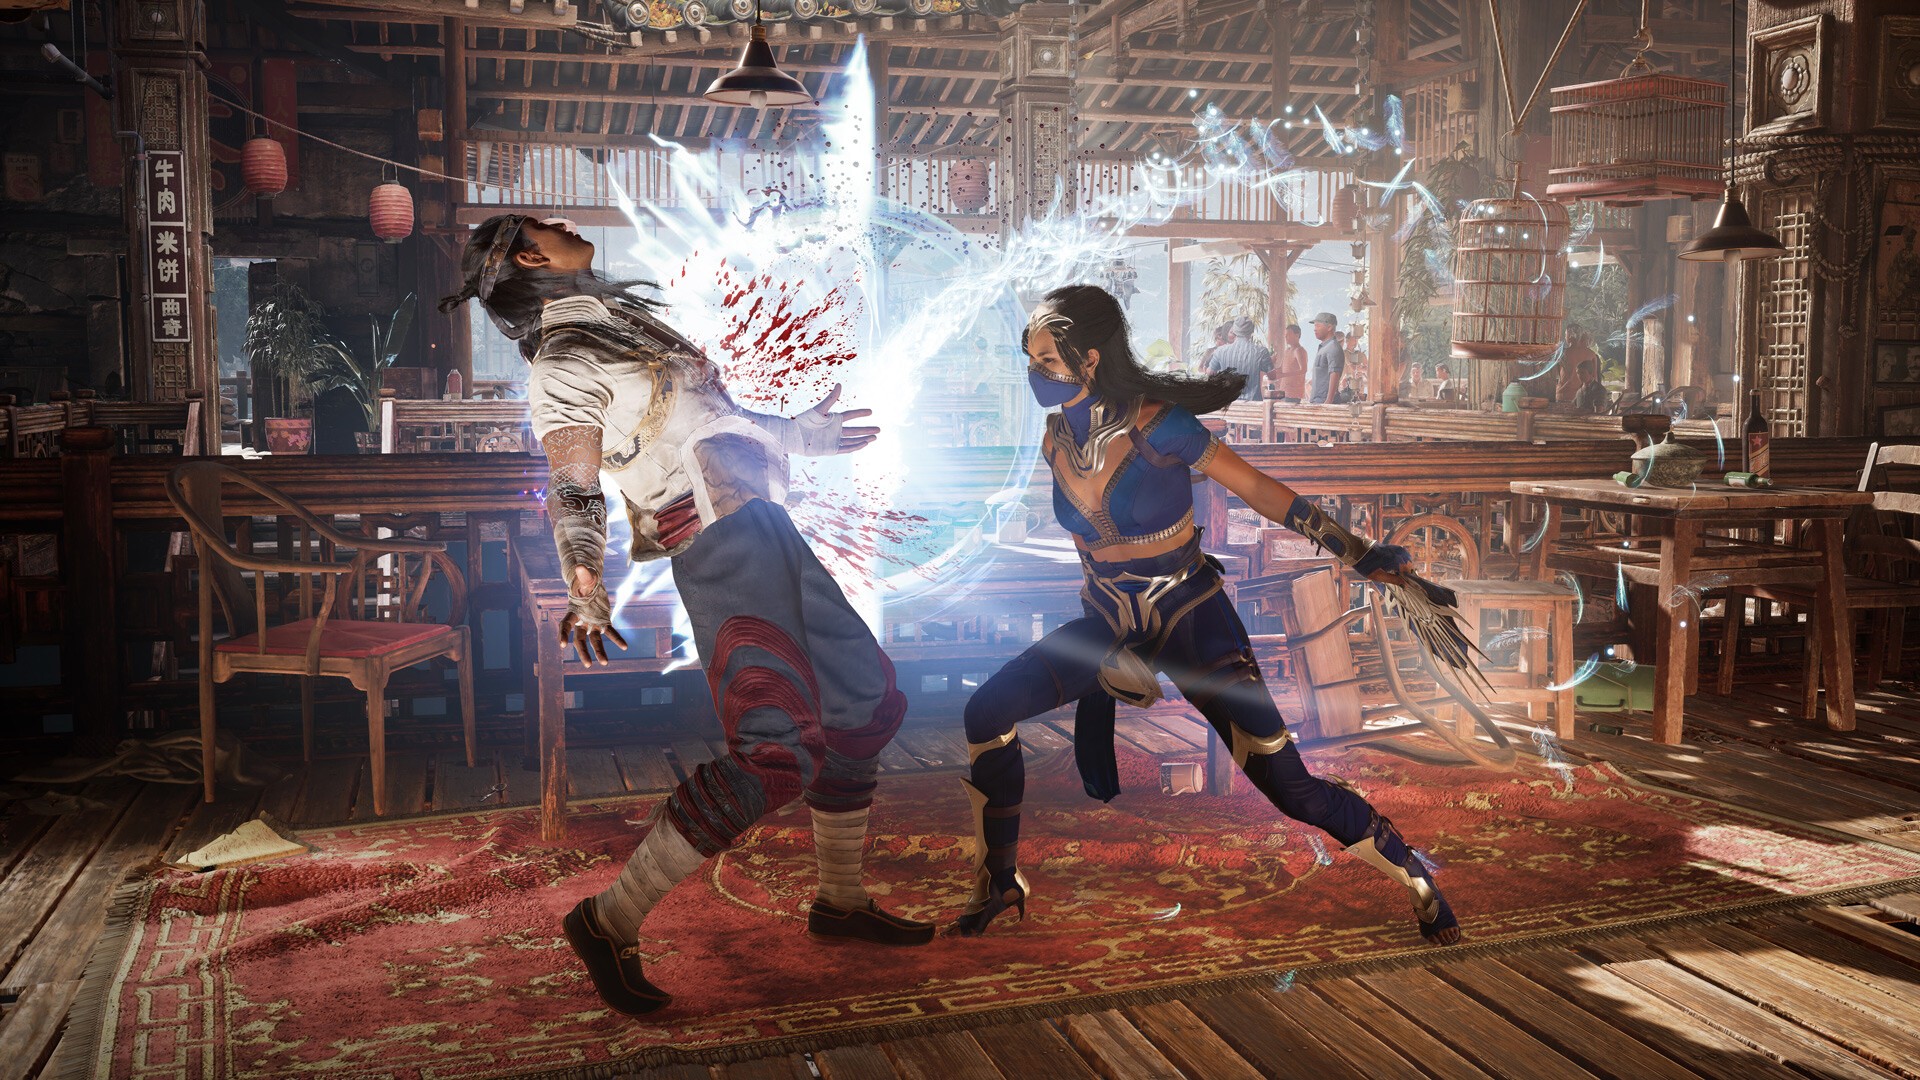 Tải miễn phí Mortal Kombat 1 - Game đối kháng được mong chờ nhất năm 2023